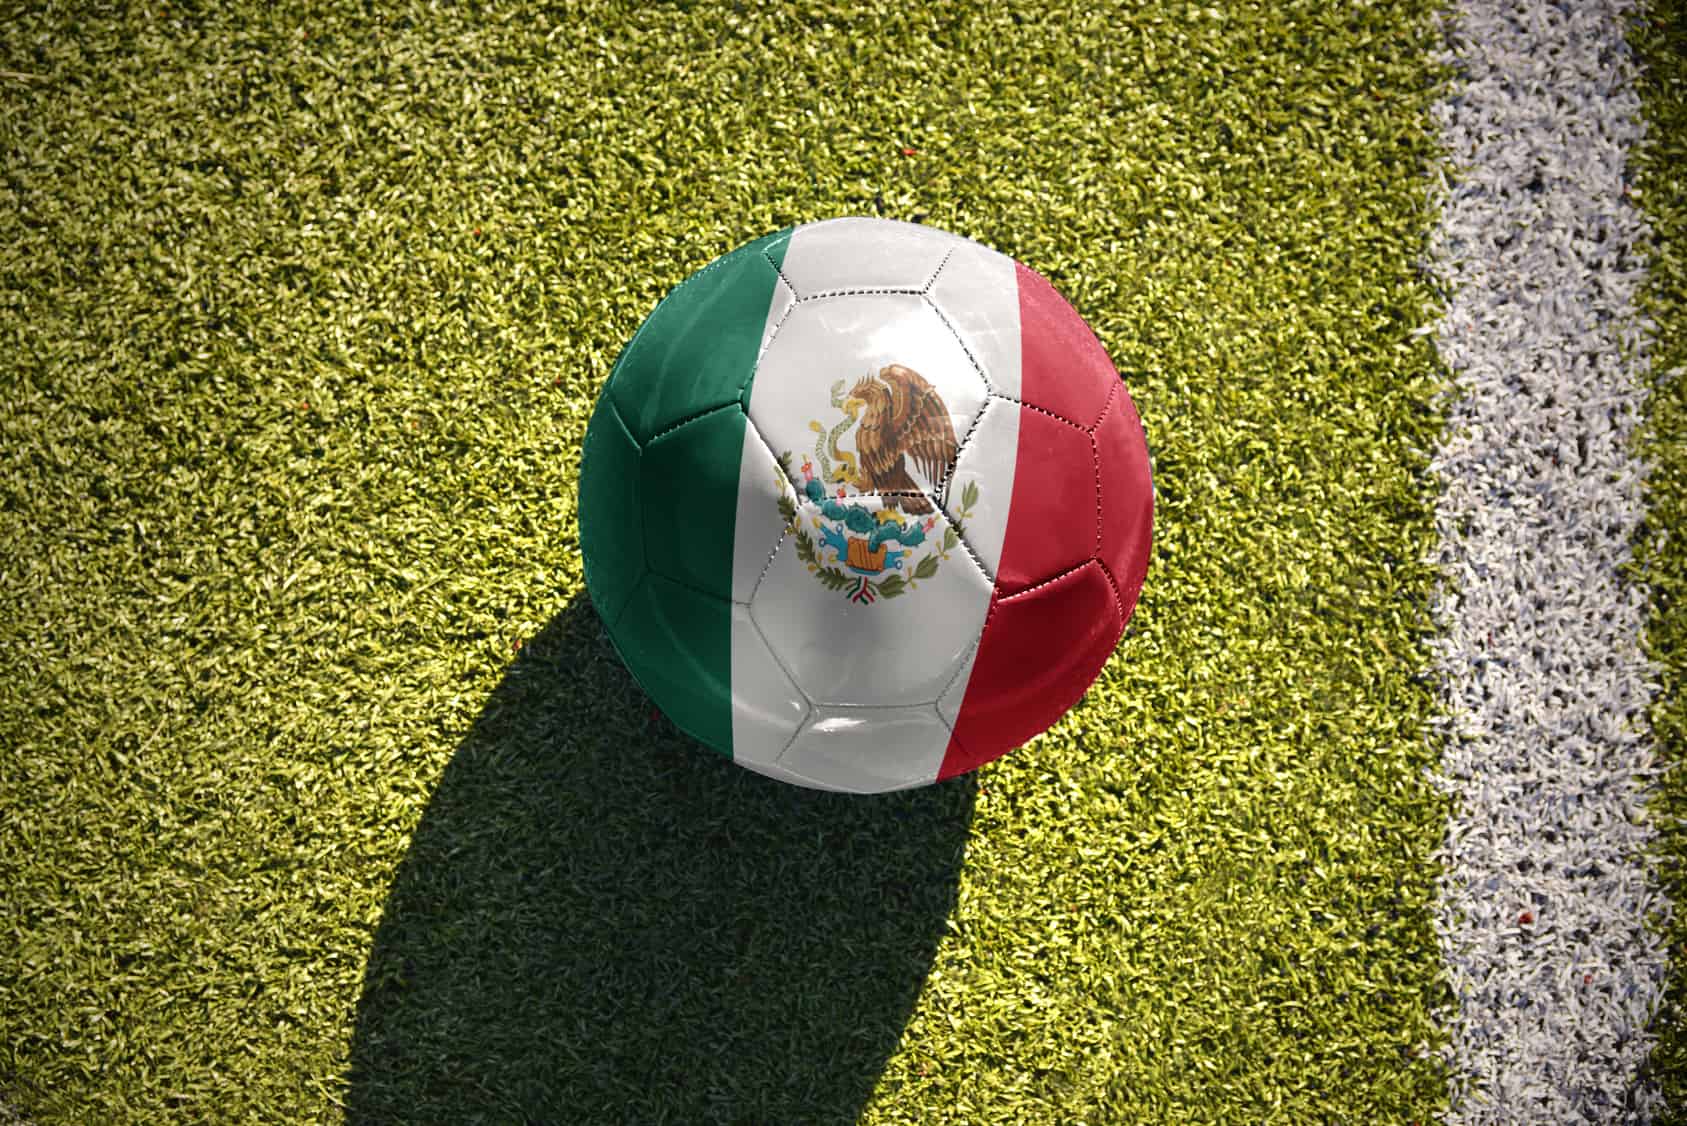 La Selección Nacional de México (alias el Tri) se torna la cosa más importante de las cosas más importantes en el país.